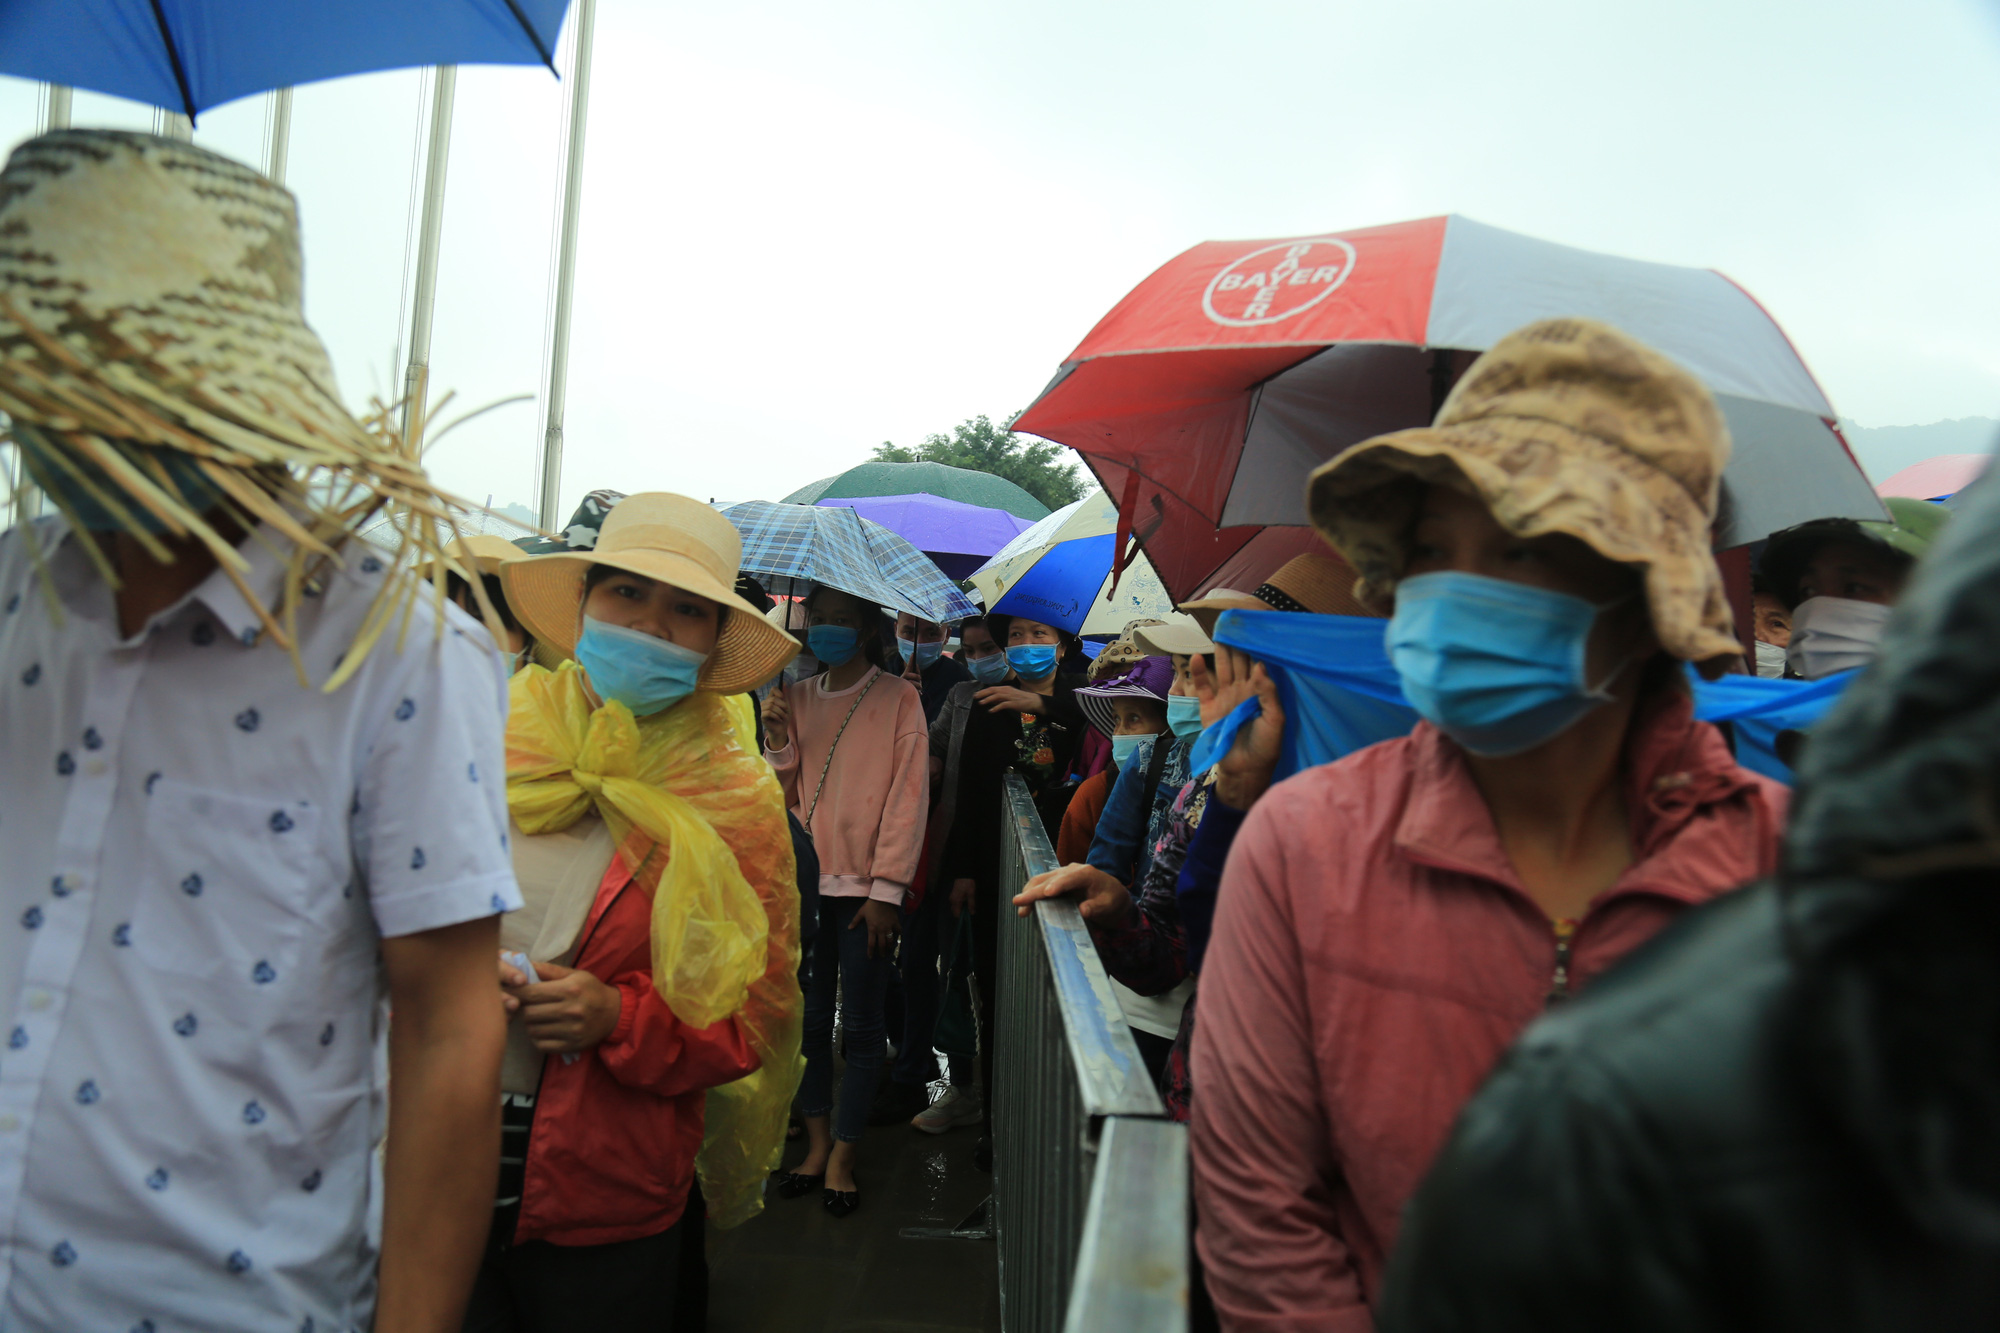 Vạn người đội mưa lớn đổ về gây quá tải, chùa Tam Chúc liên tục thông báo tạm dừng bán vé  - Ảnh 3.